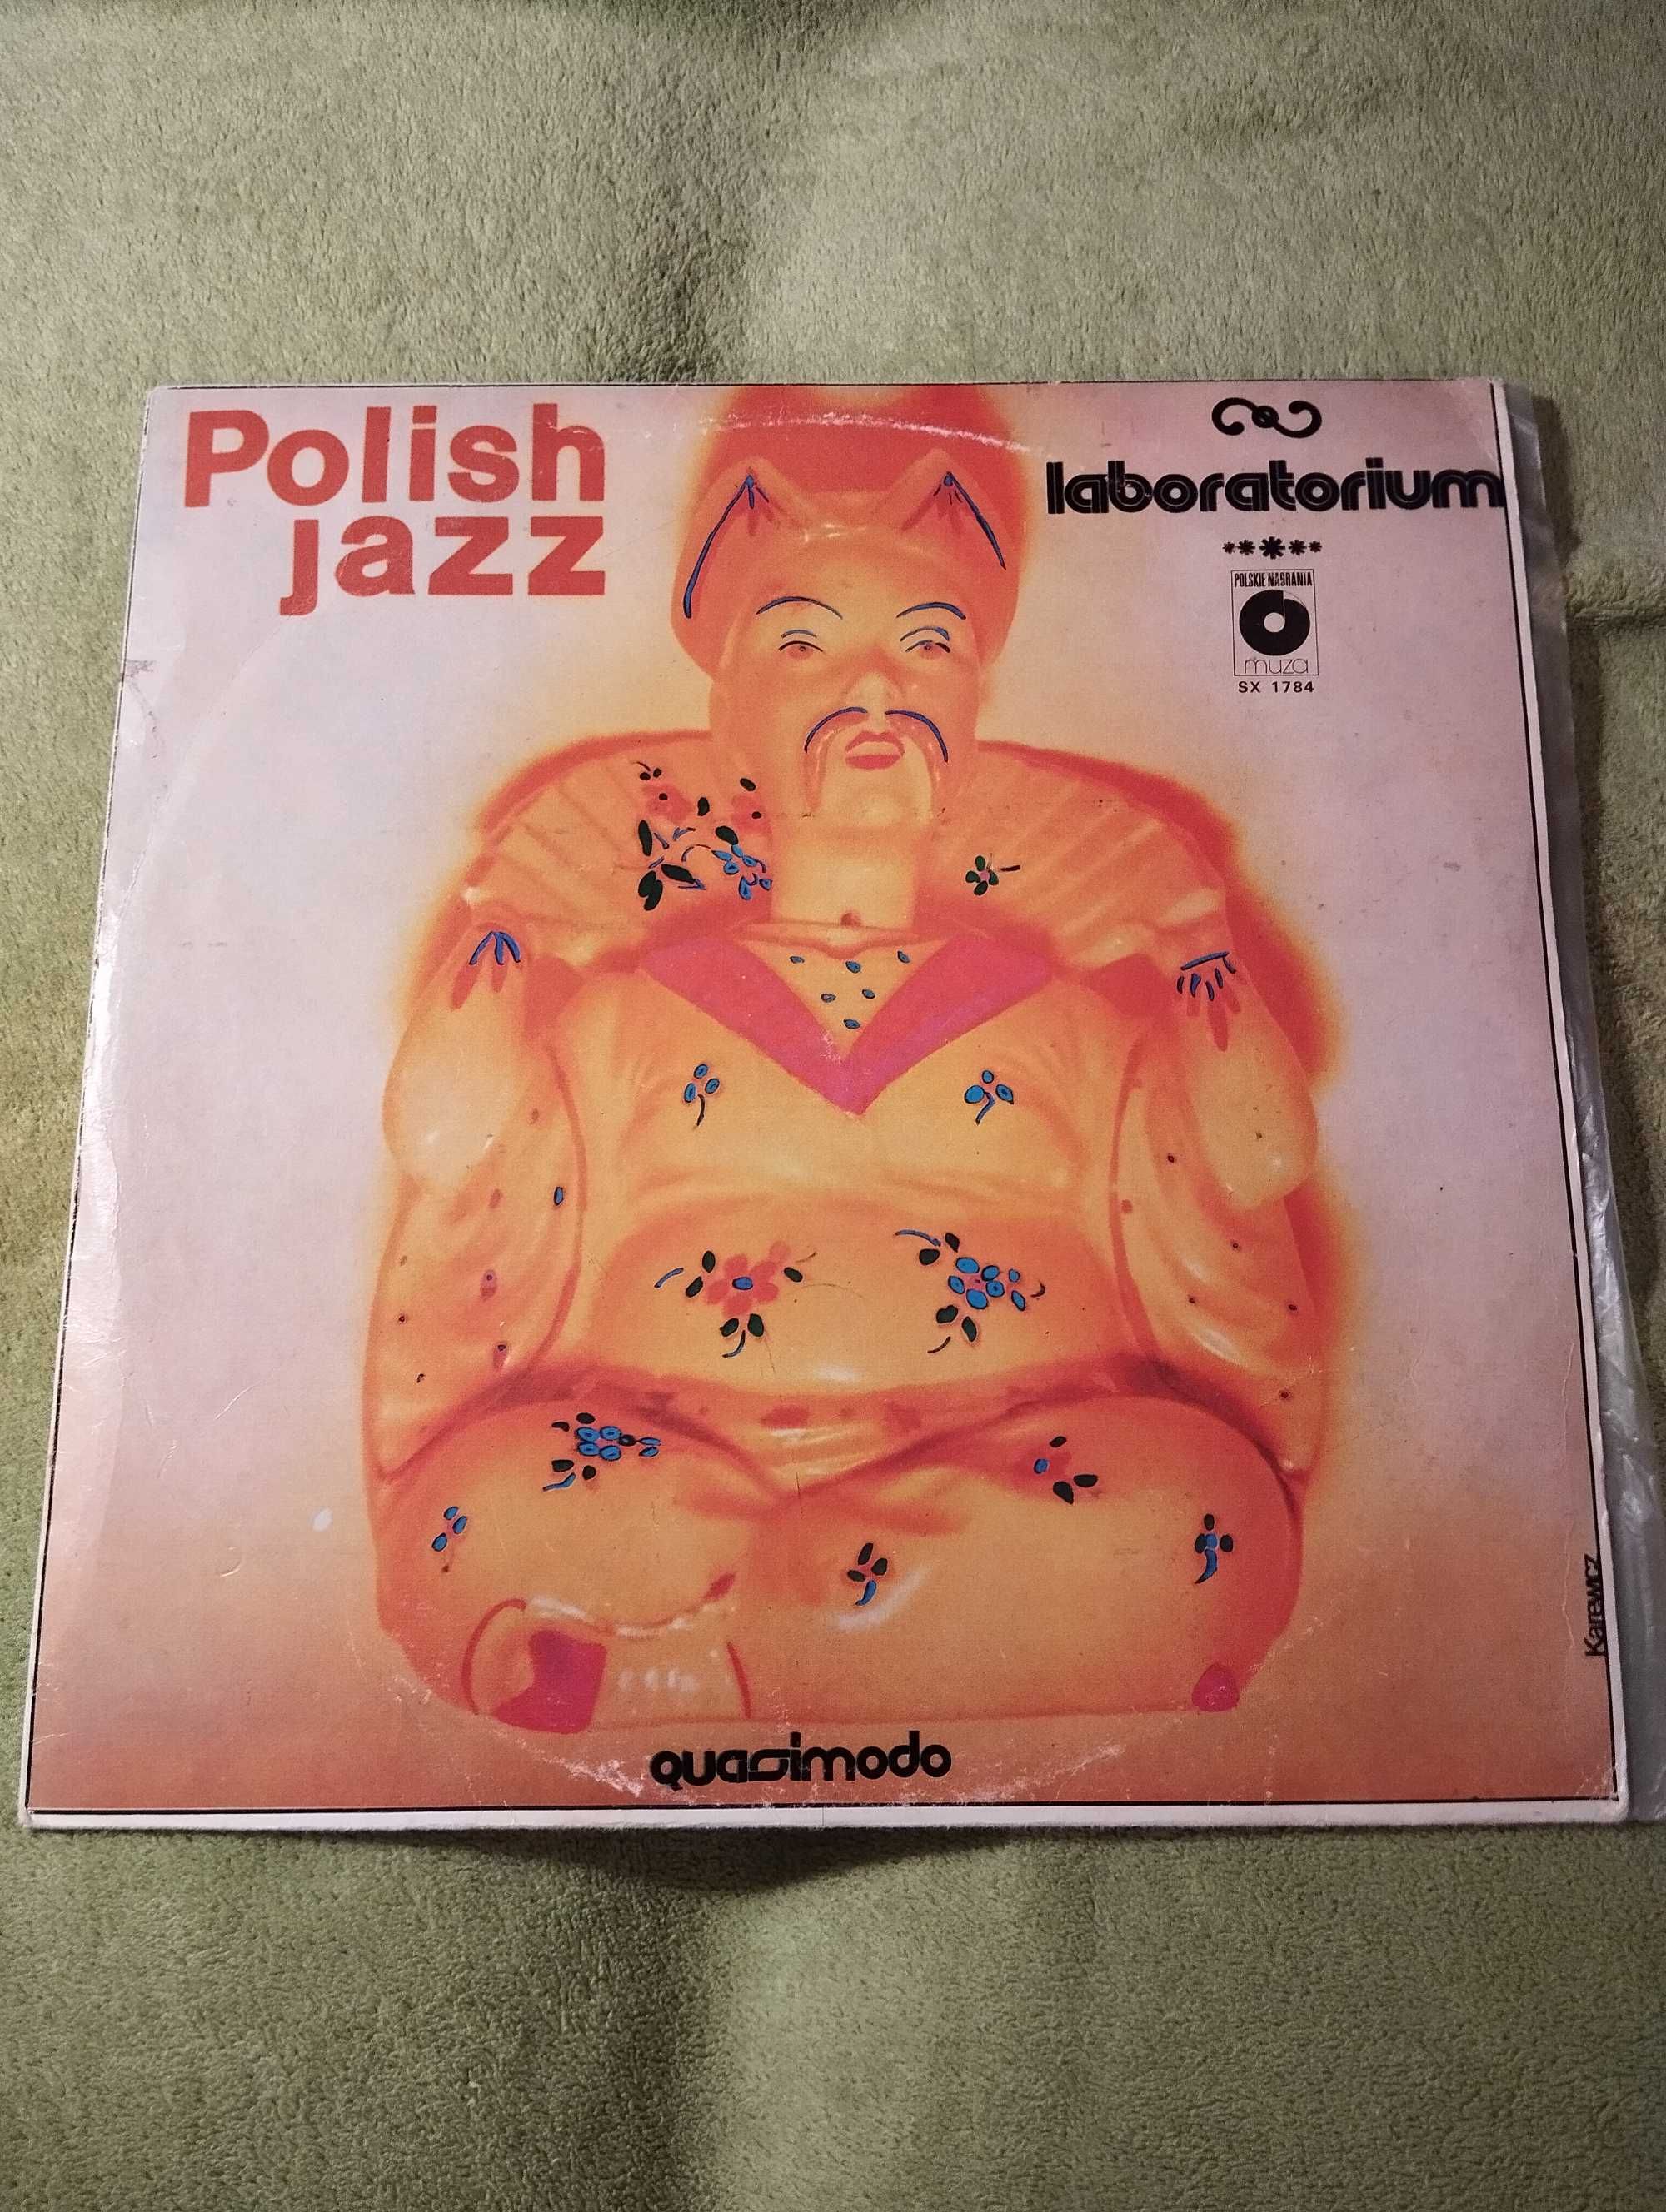 Polish Jazz Laboratorium Quasimodo